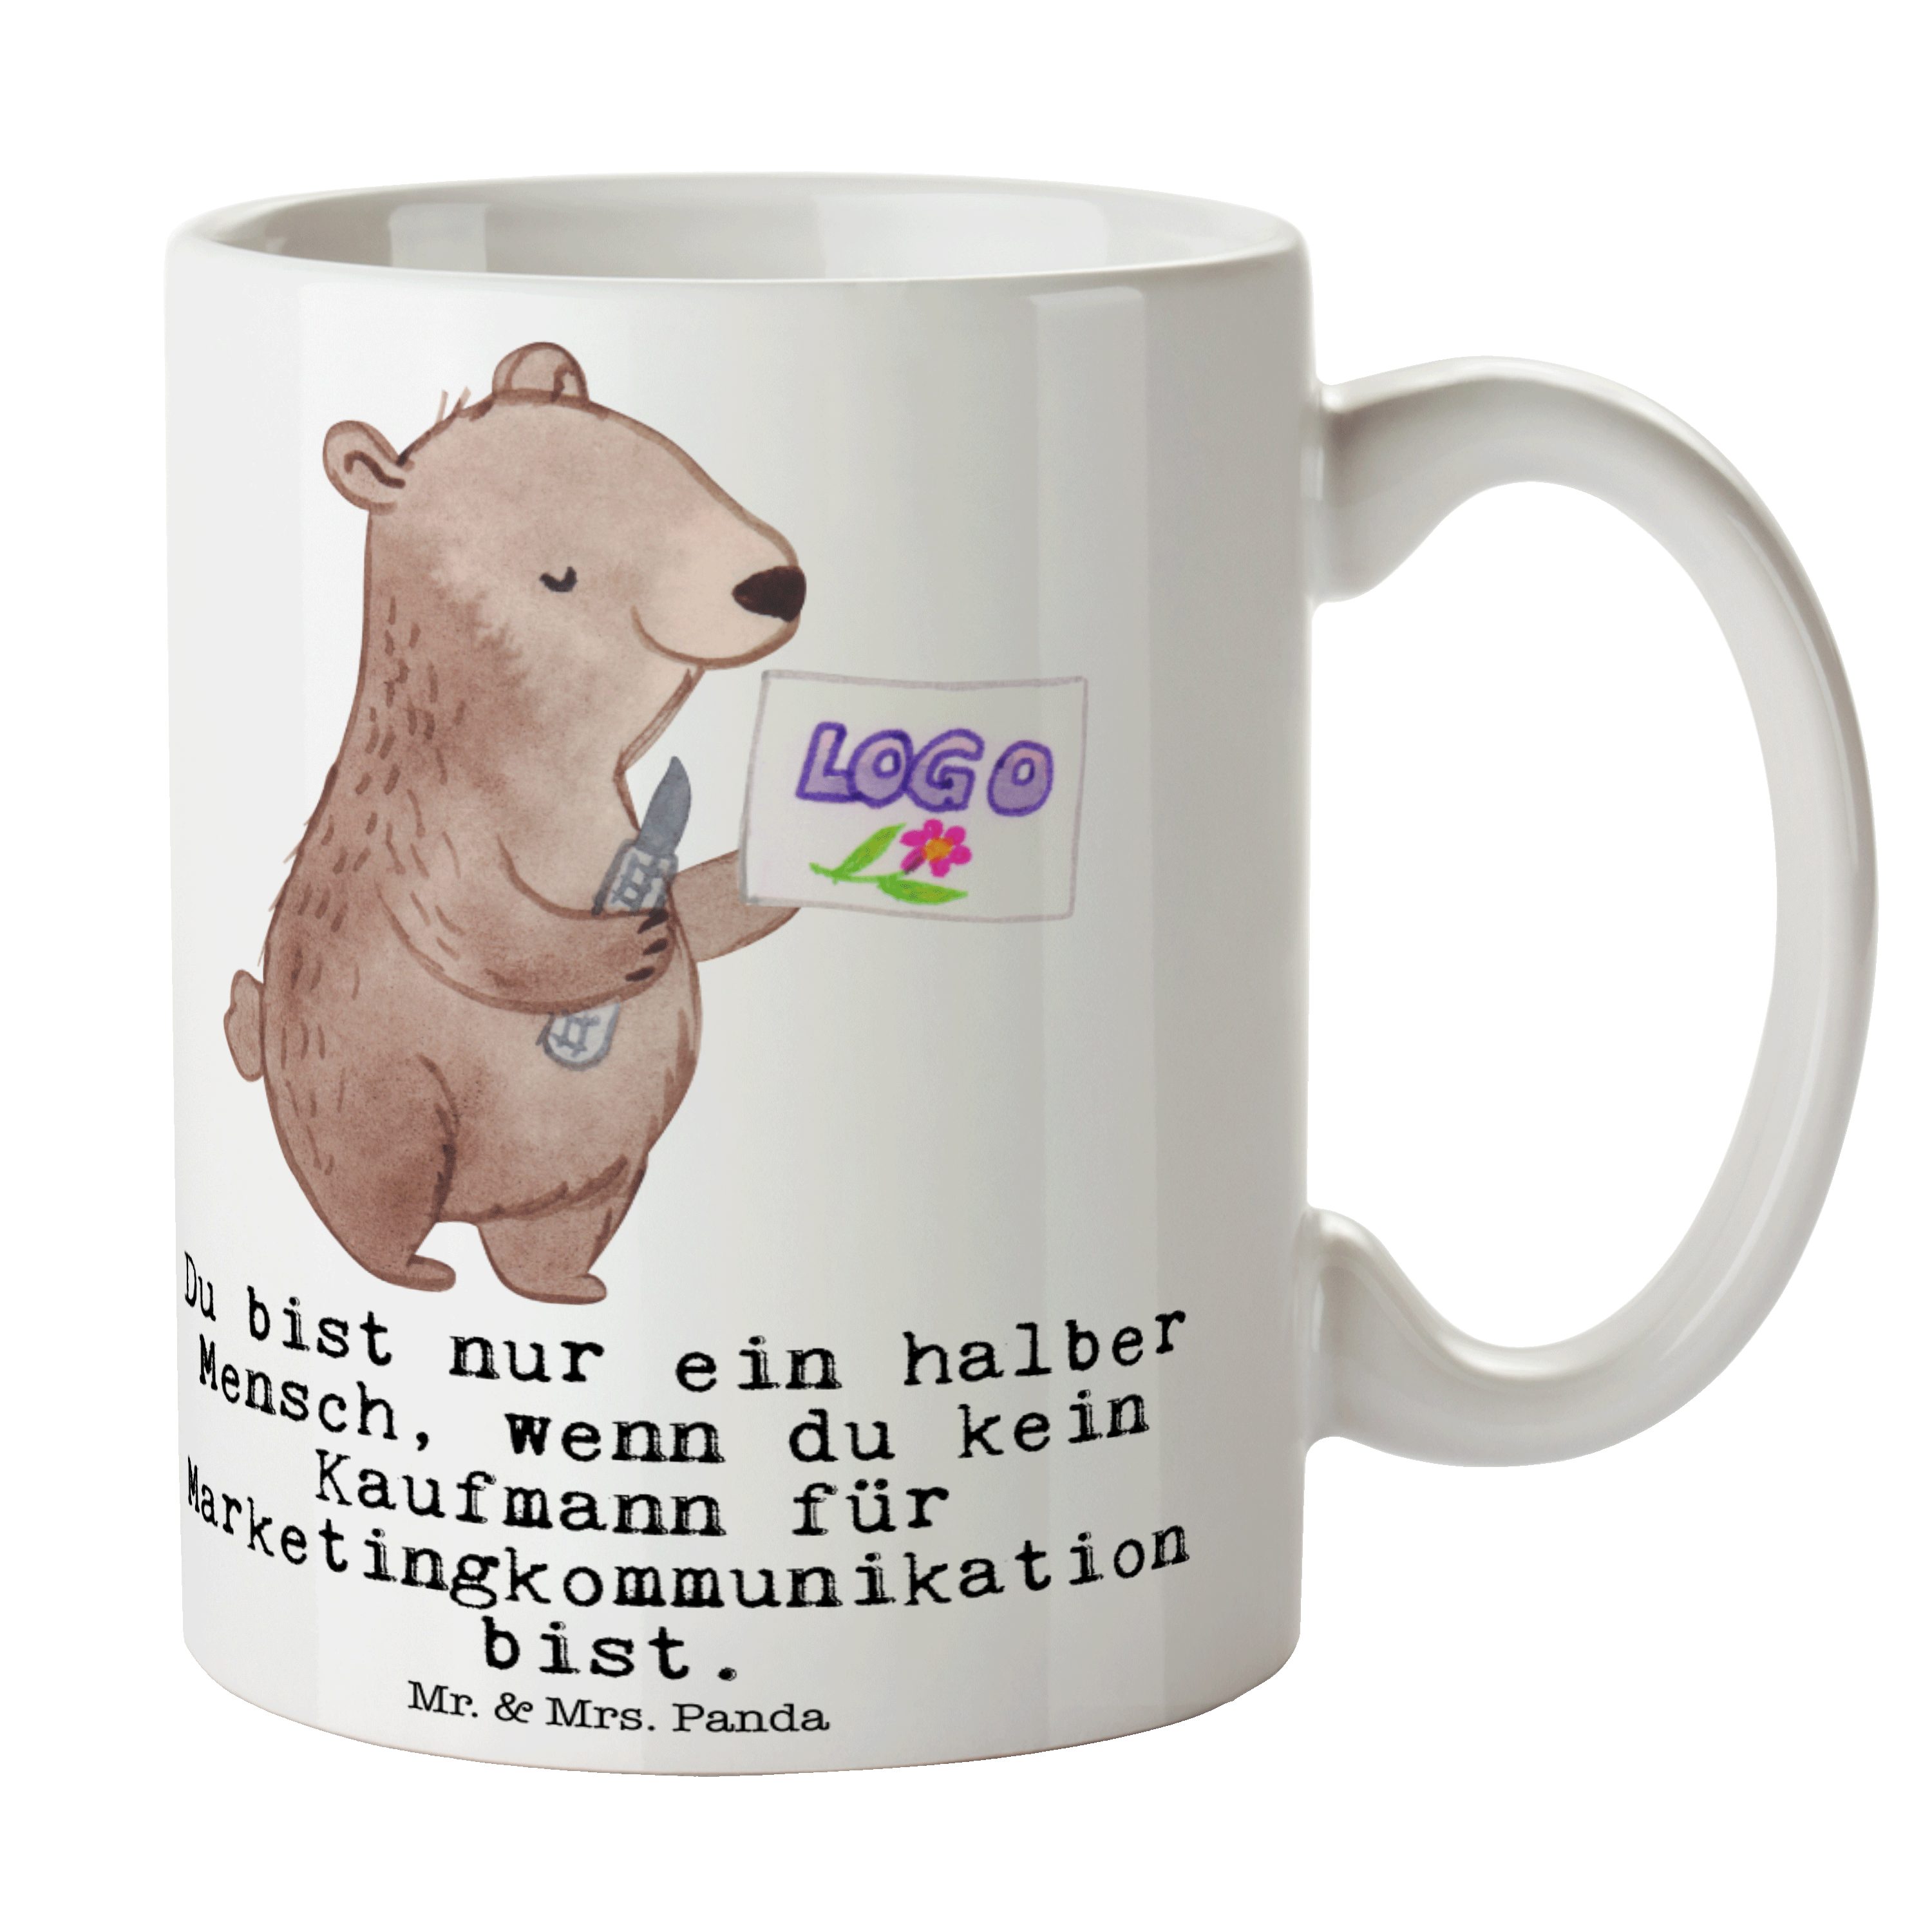 Mr. & Mrs. Panda Tasse Kaufmann für Marketingkommunikation mit Herz - Weiß - Geschenk, Beche, Keramik